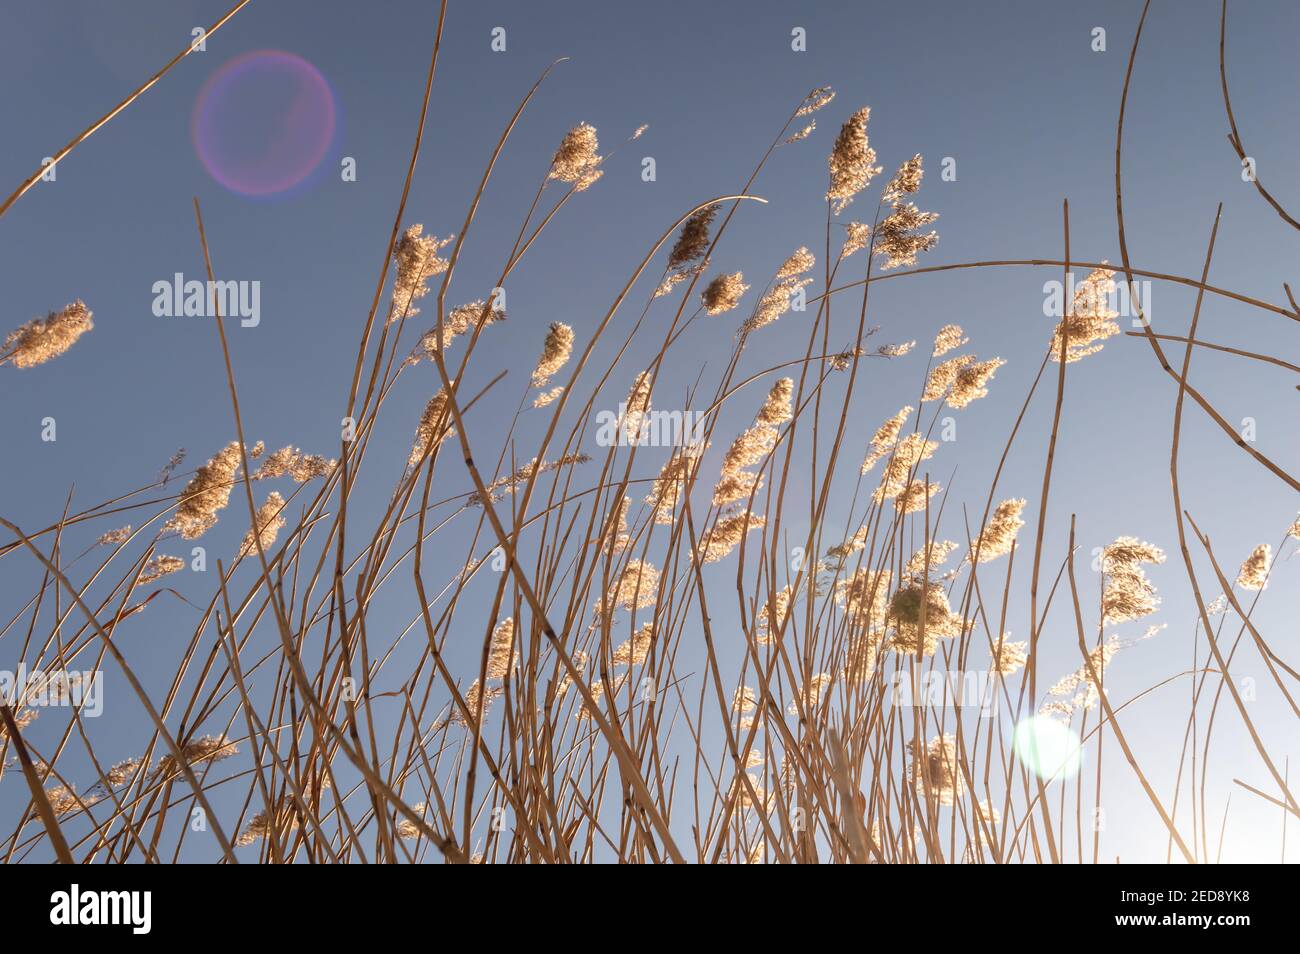 Immagine di una canna alta essiccata e le loro teste di seme sparato dal basso nel tardo sole d'inverno. Svasatura lente Foto Stock